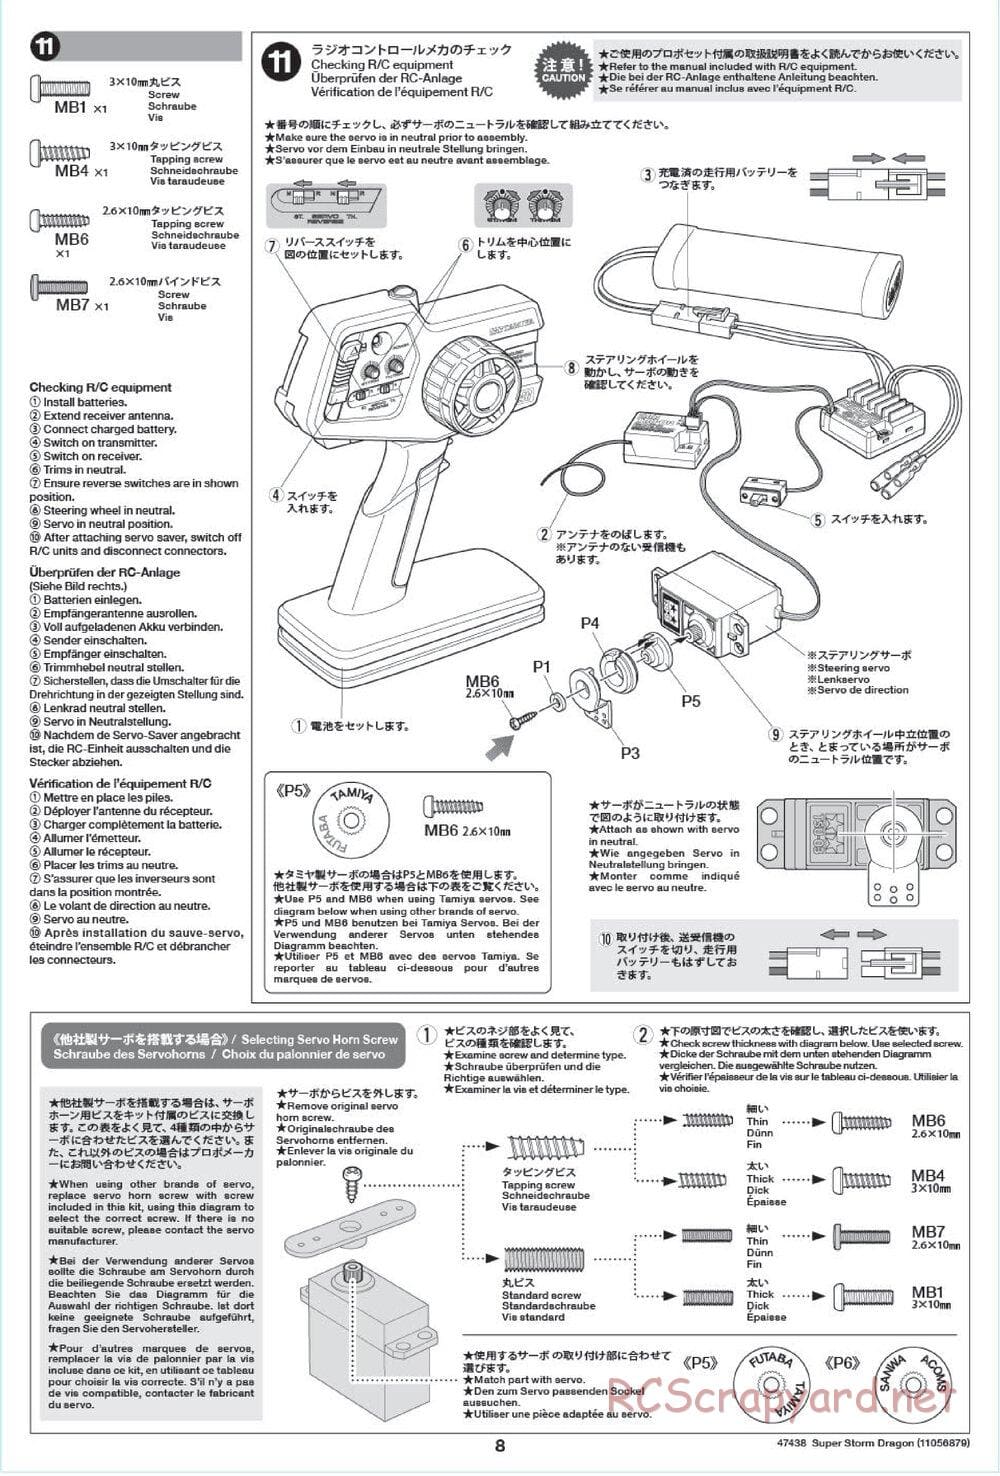 Tamiya - Super Storm Dragon Chassis - Manual - Page 8